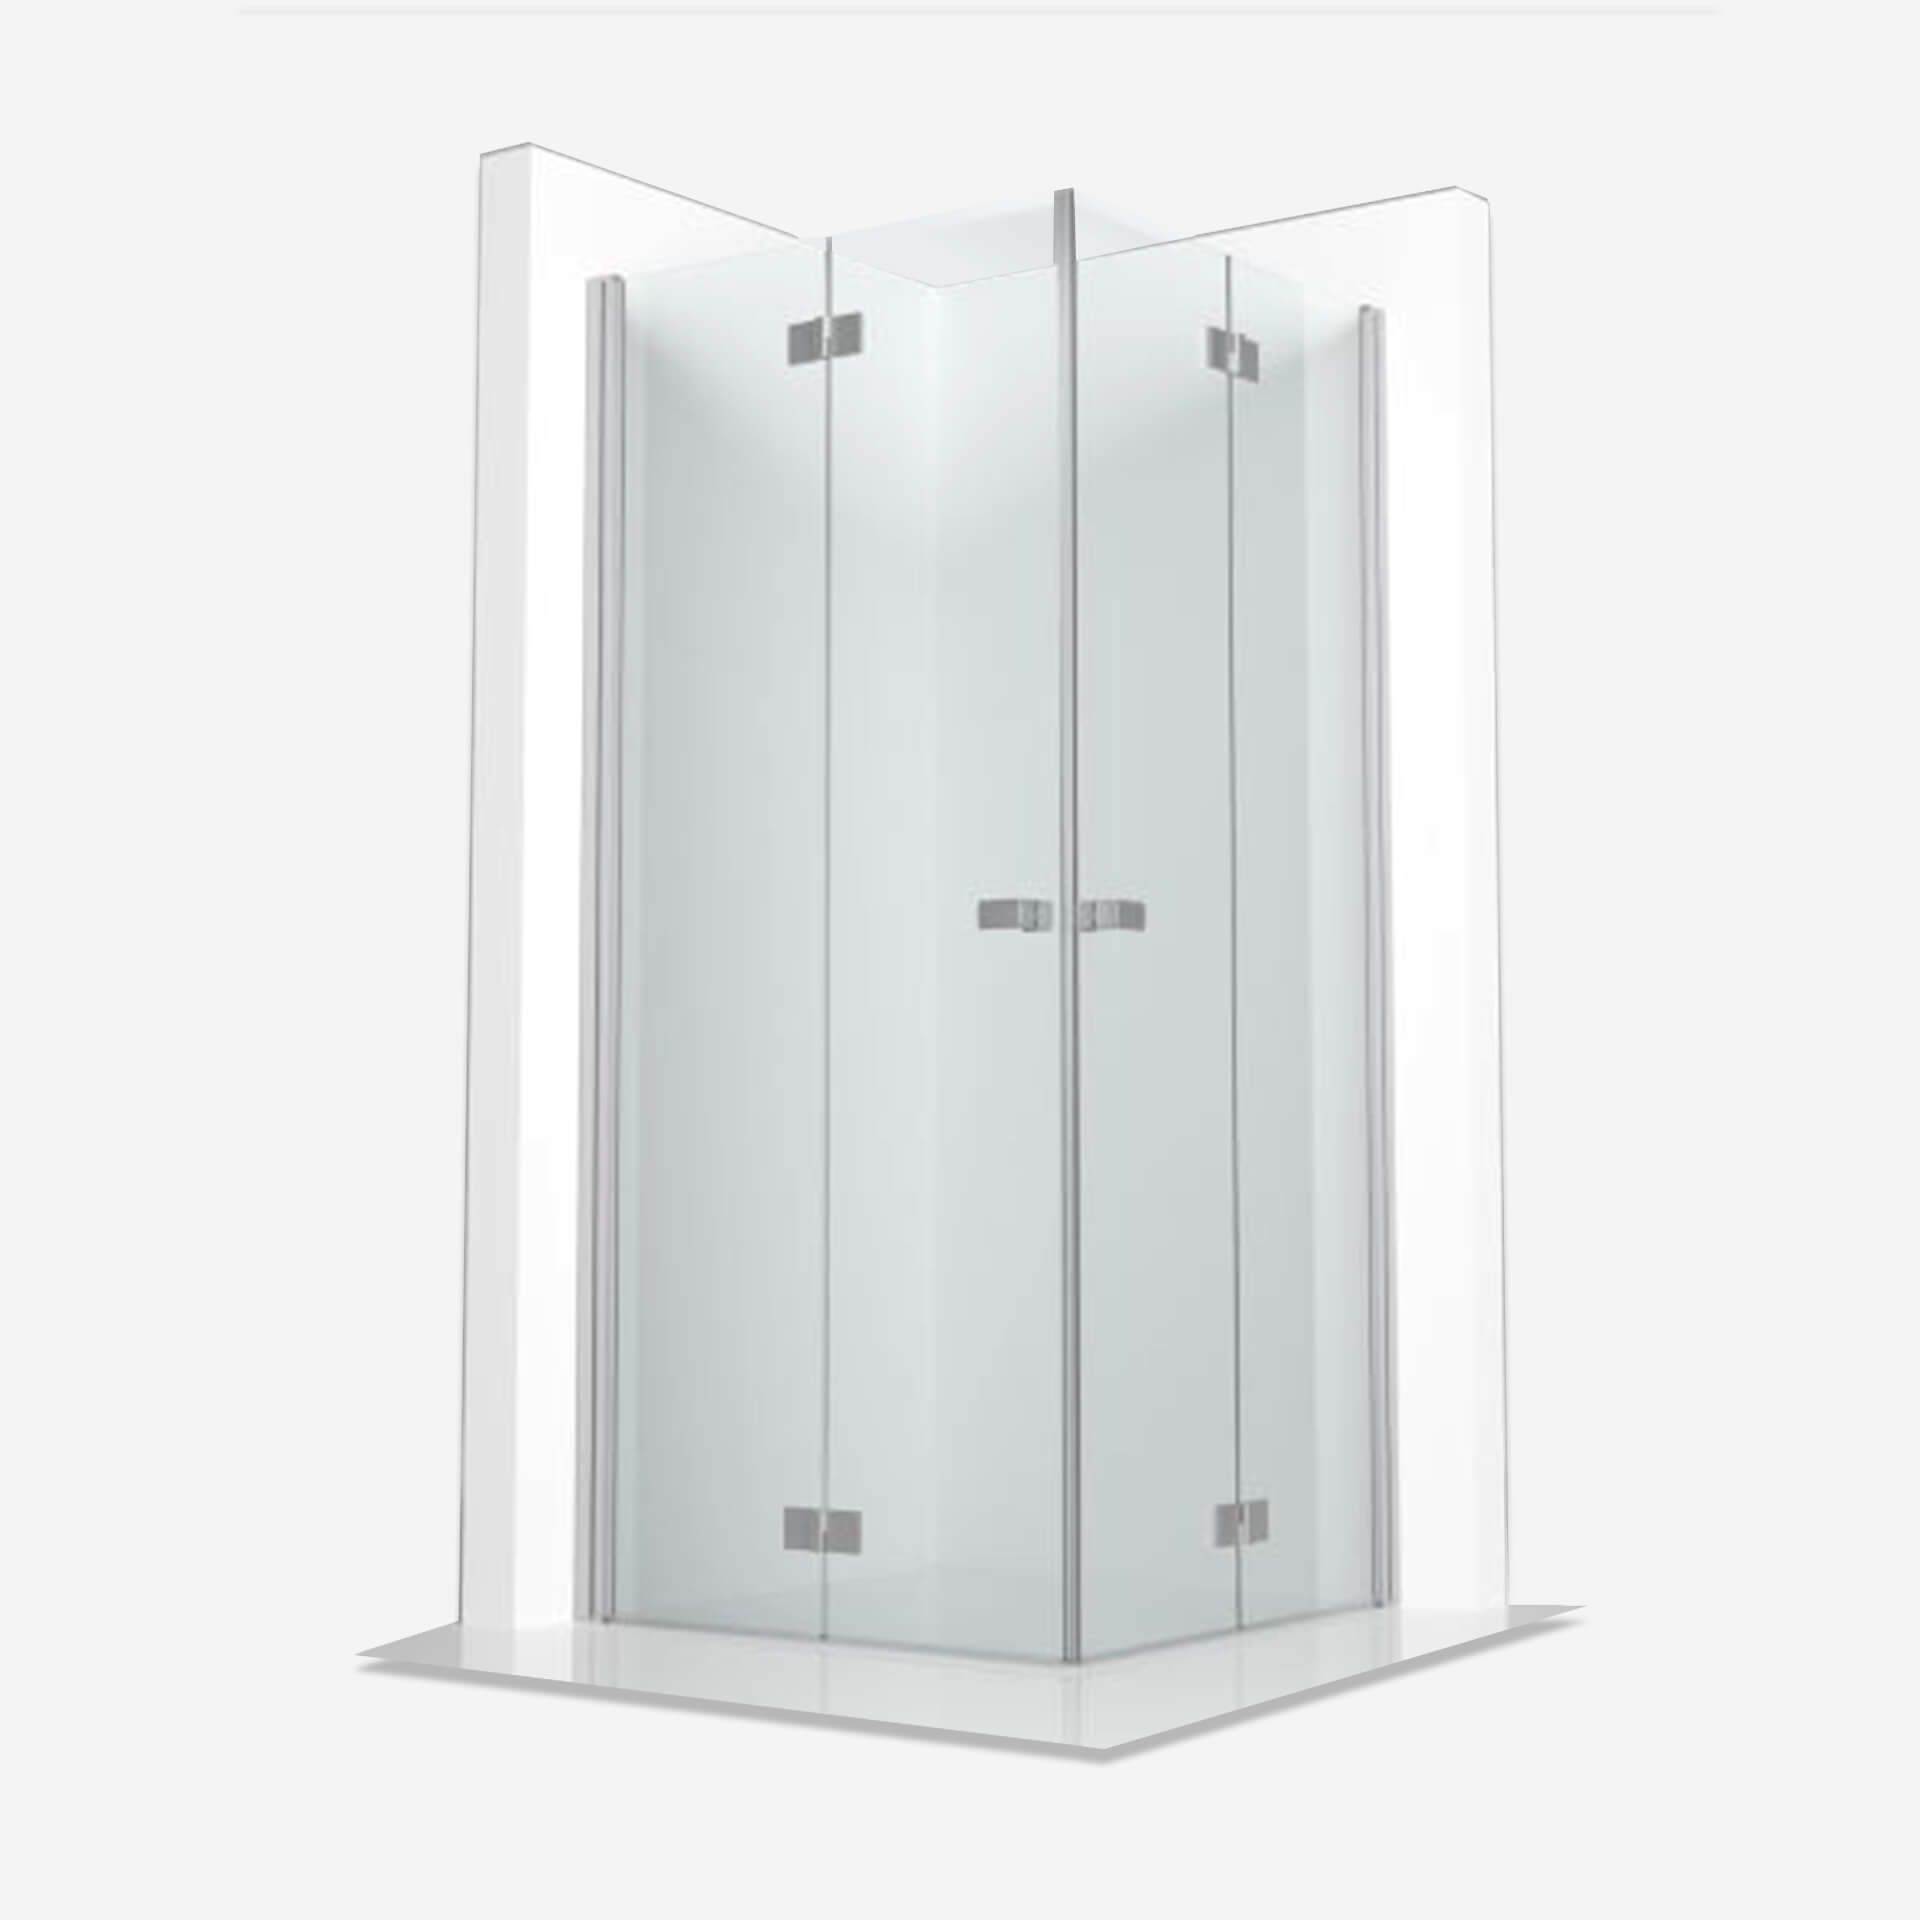 Salto kabina prysznicowa Aquante, narożna, drzwi składane 90 cm